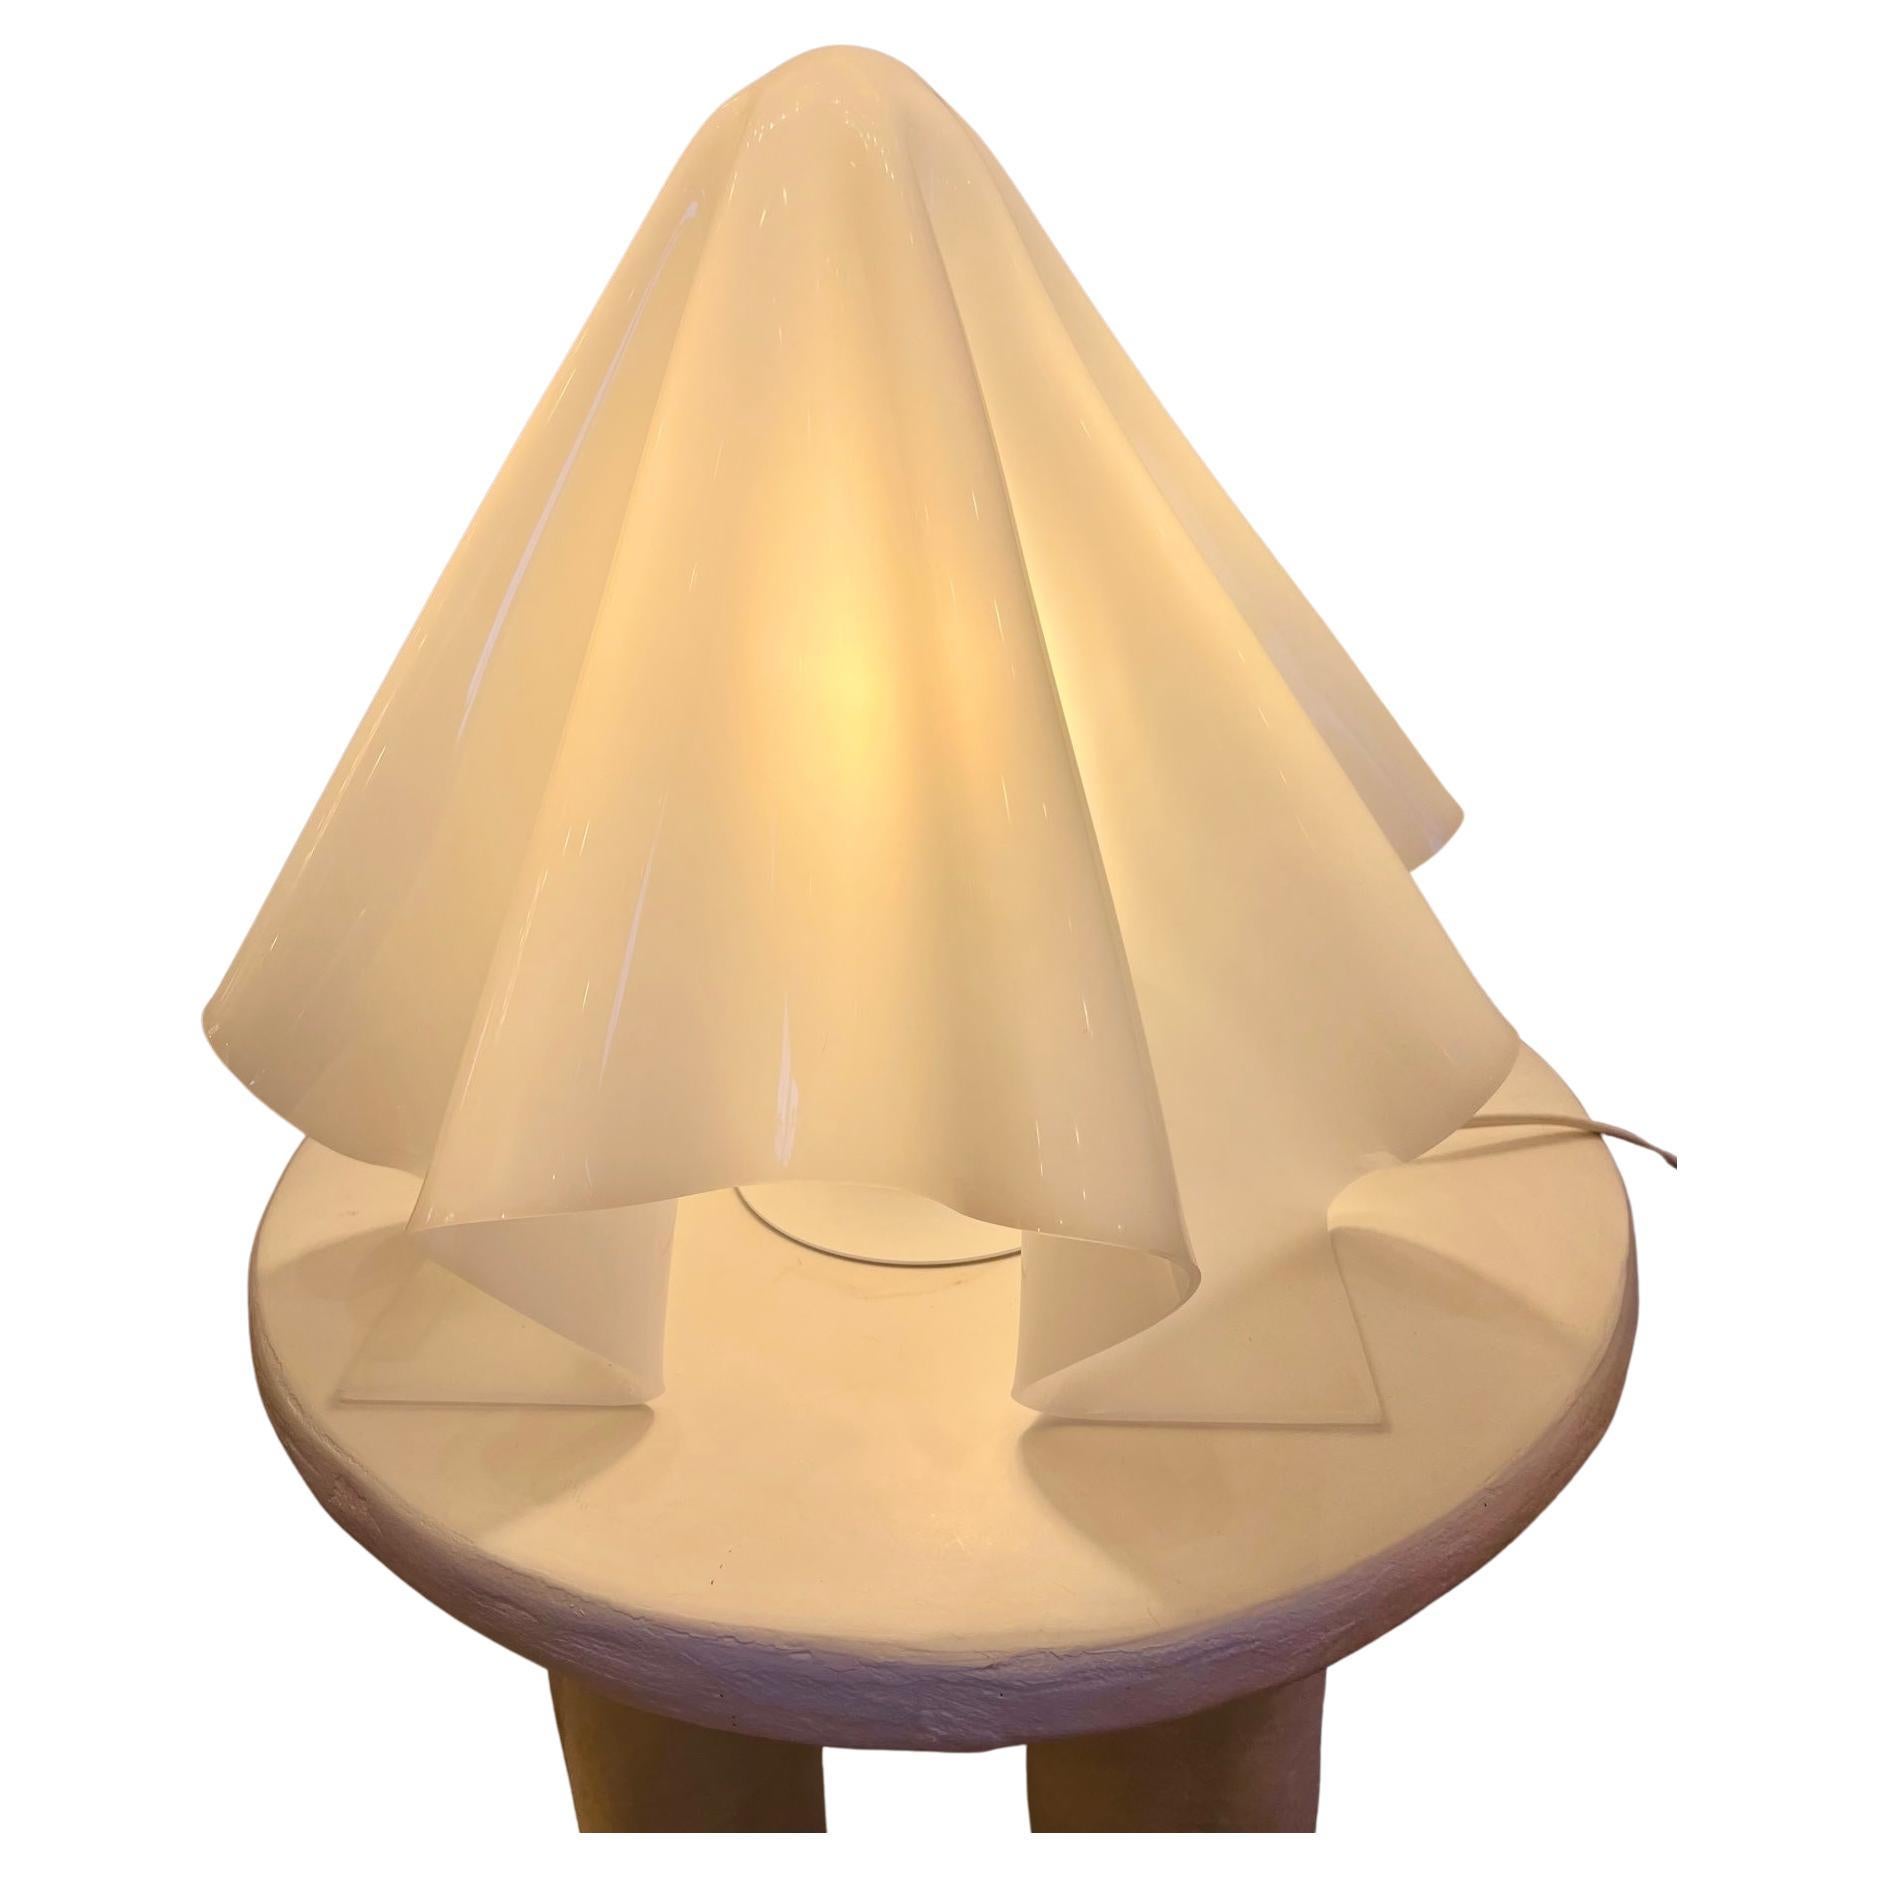 Small White Oba-Q "Ghost" K Series Lamp by Shiro Kuramata